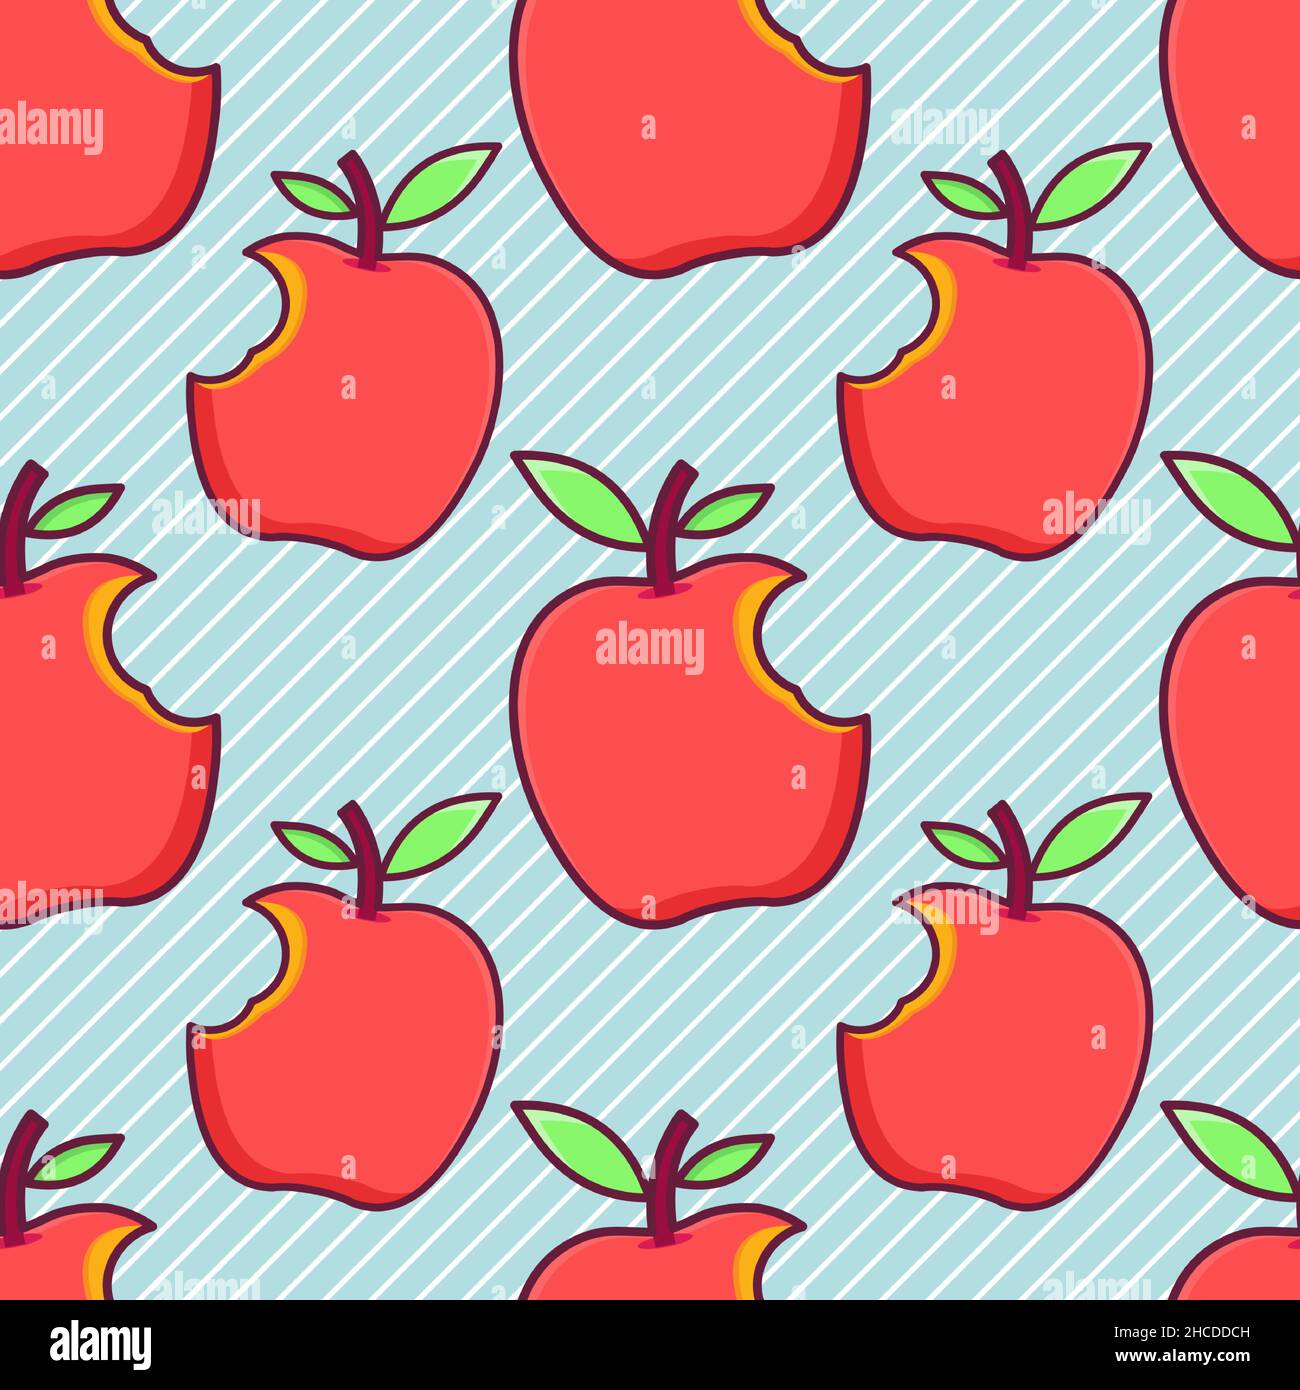 bitten apple seamless pattern  vector illustration Stock Vector